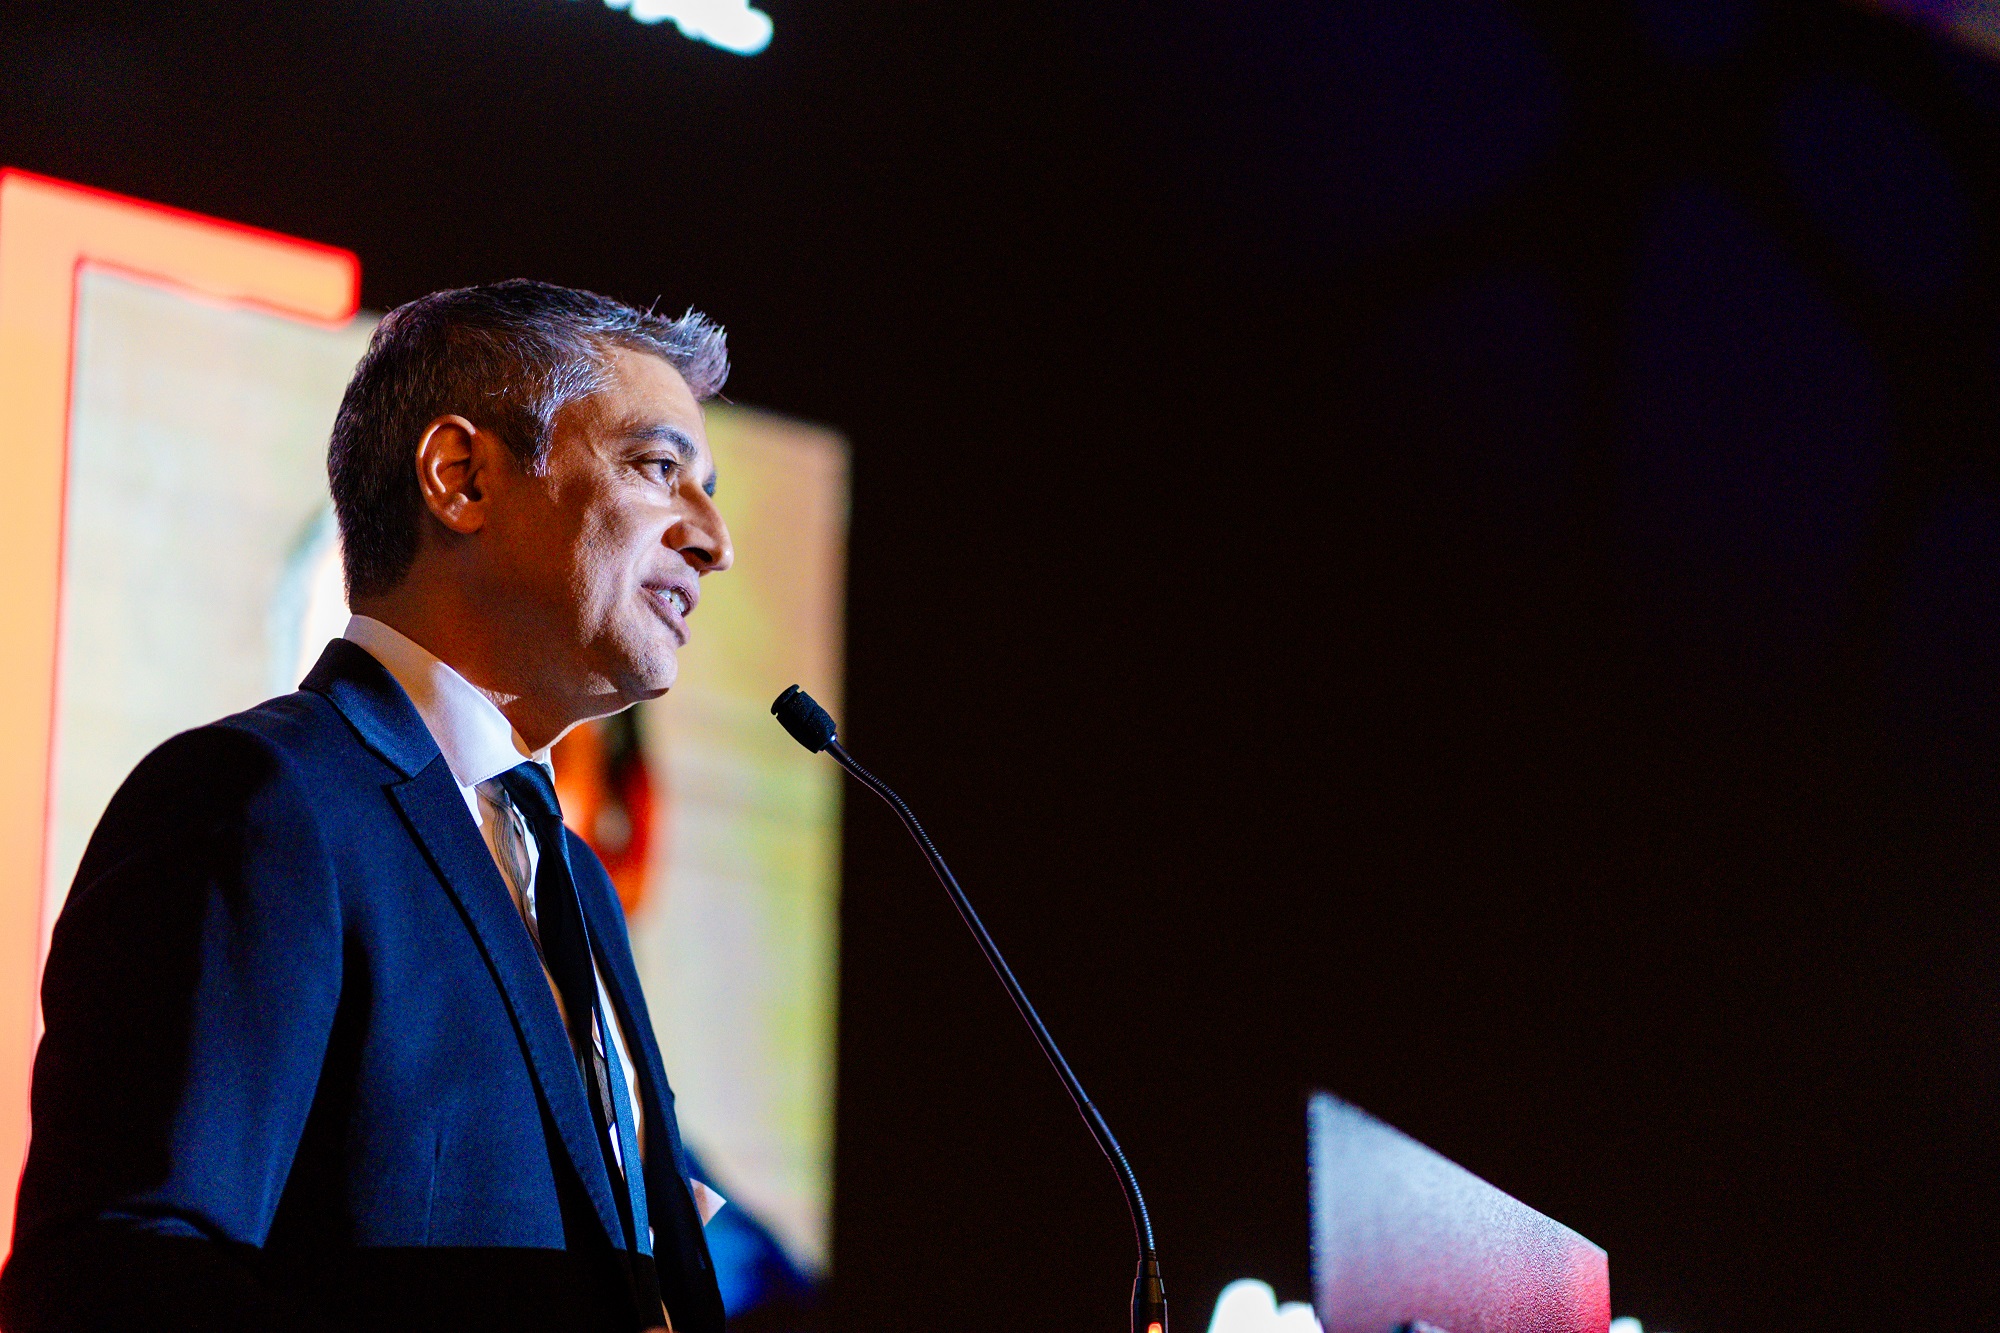 Amit Gupta, President TiE Singapore & Board of Trustees, TiE Global, speaking at the TiE Global Summit Singapore